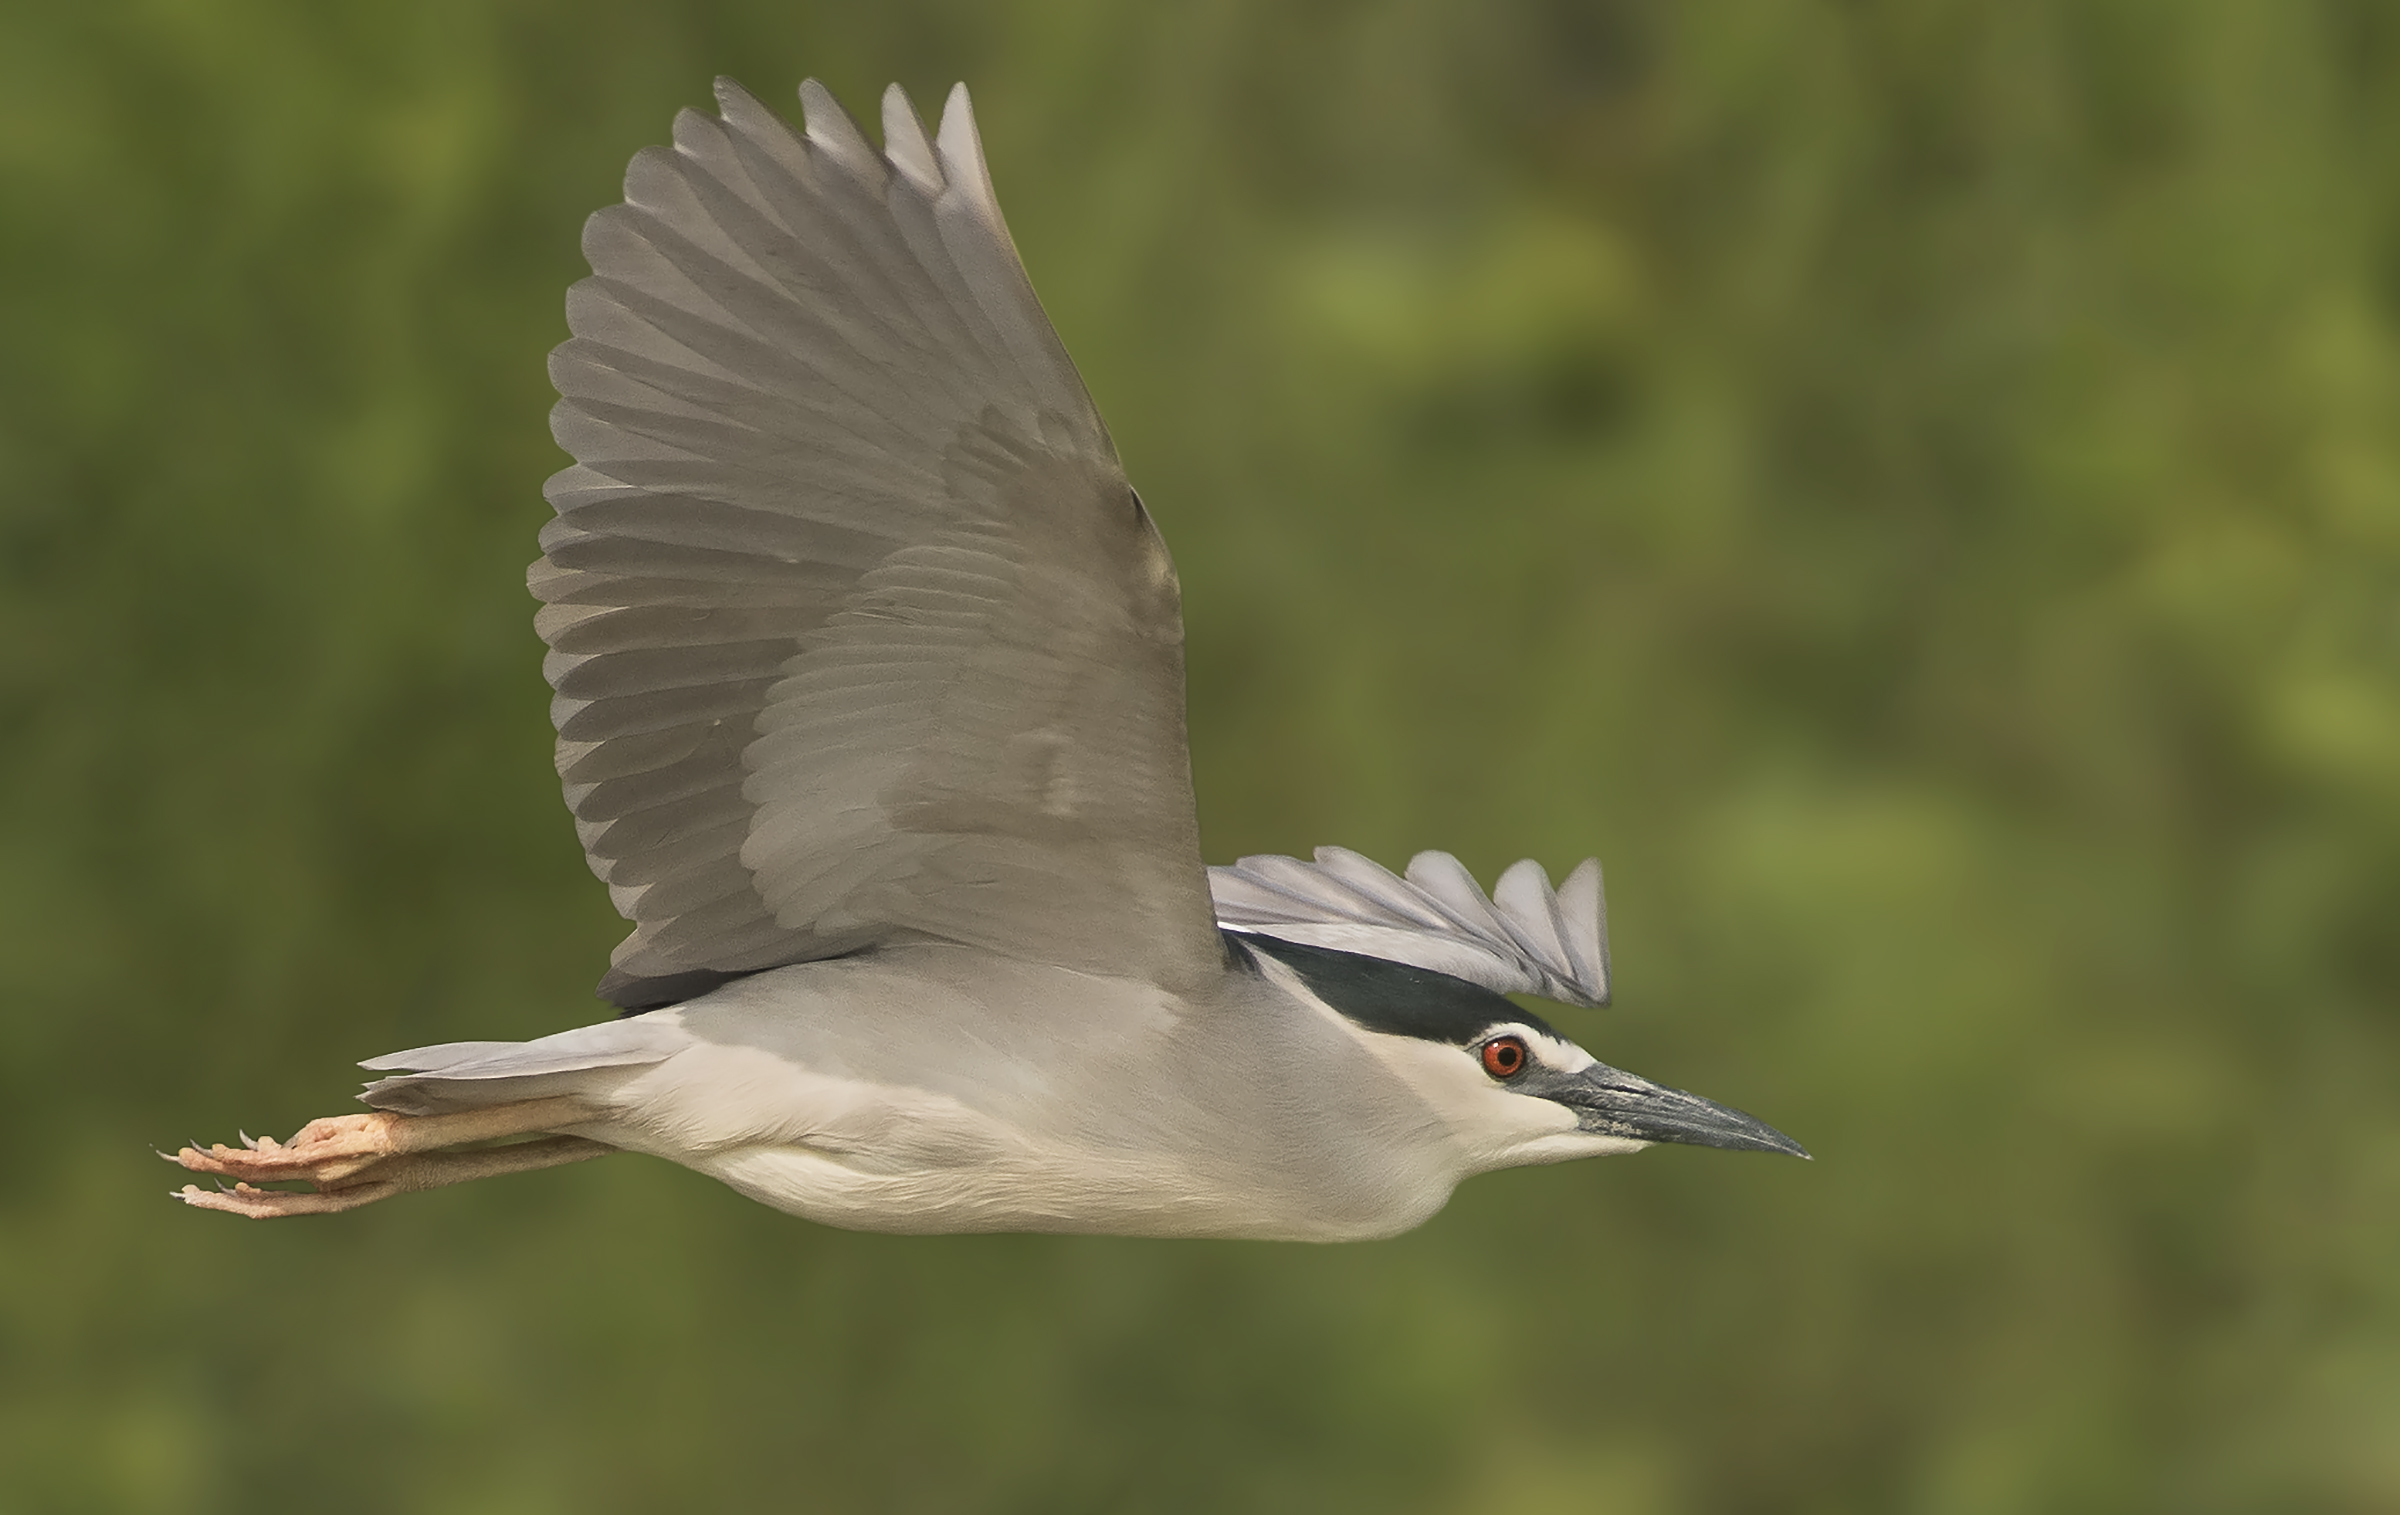 Male Night Heron in flight...